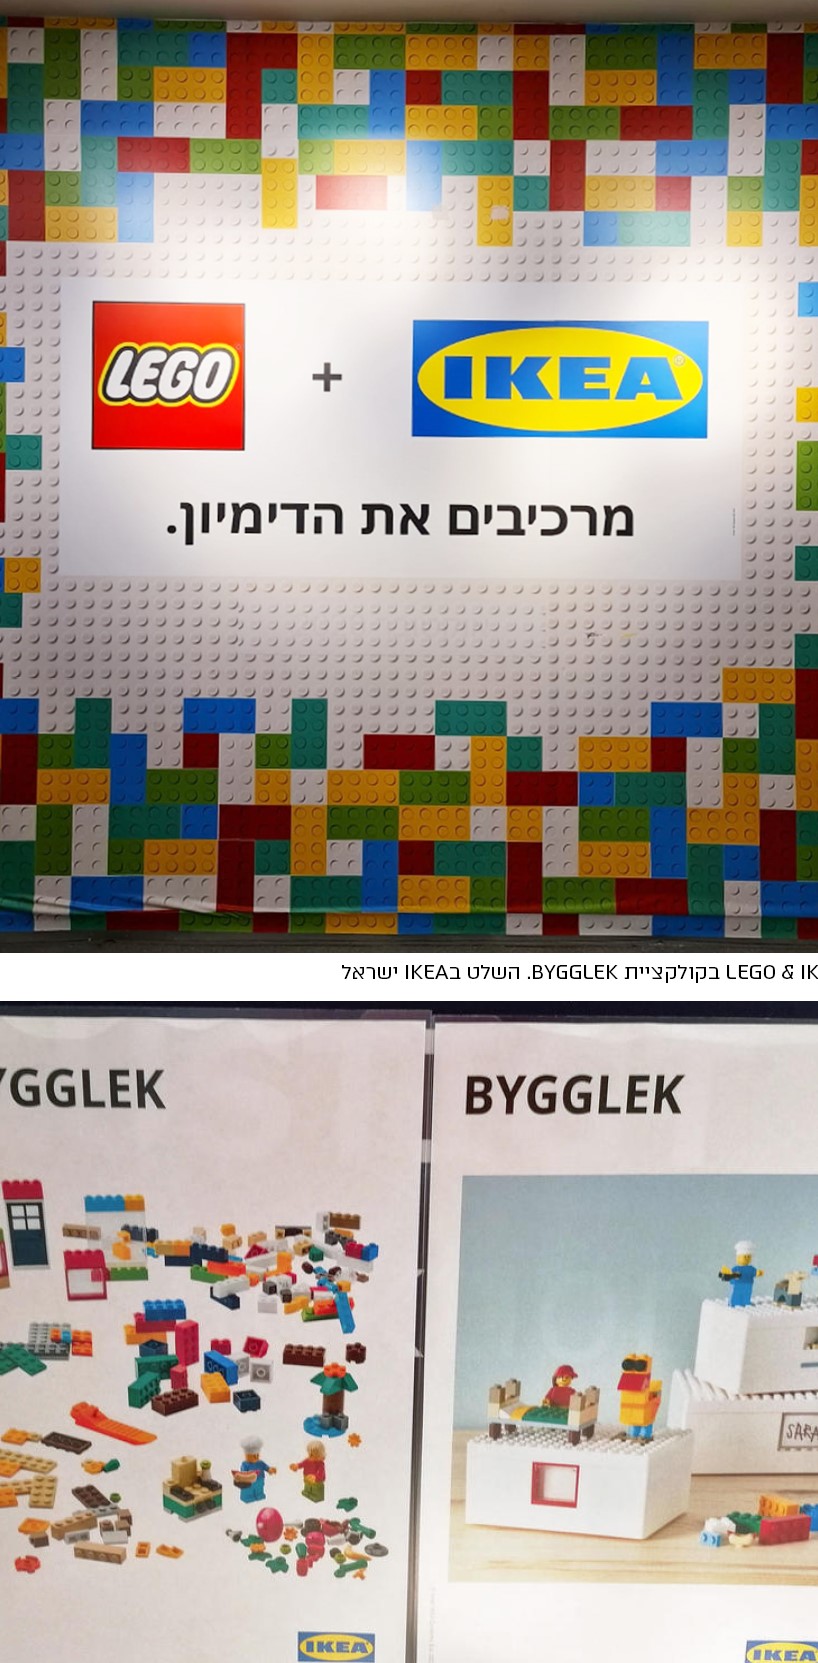 שיתוף פעולה בין LEGO & IKEA בקולקציית BYGGLEK. איקאה משיקה קופסאות אחסון לגו להתאמה אישית